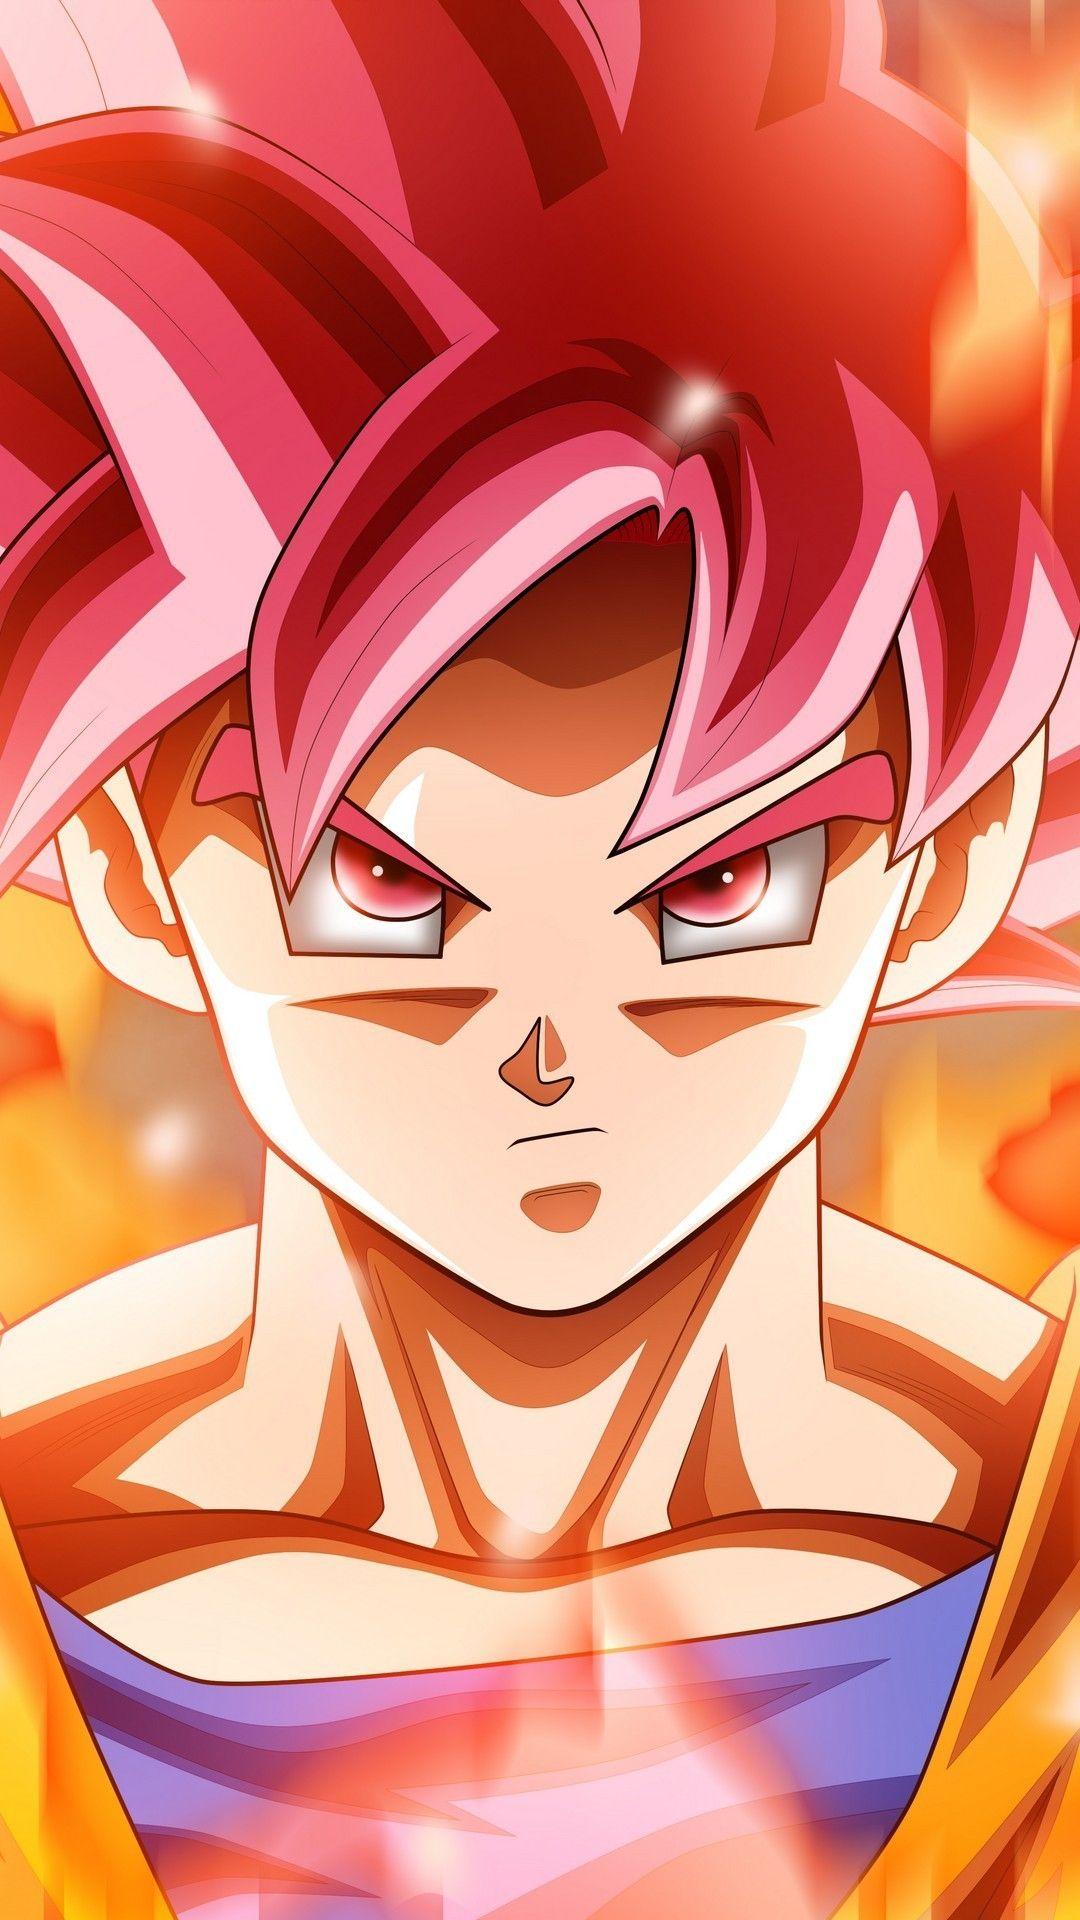 Wallpaper Android Goku Super Saiyan God. Anime